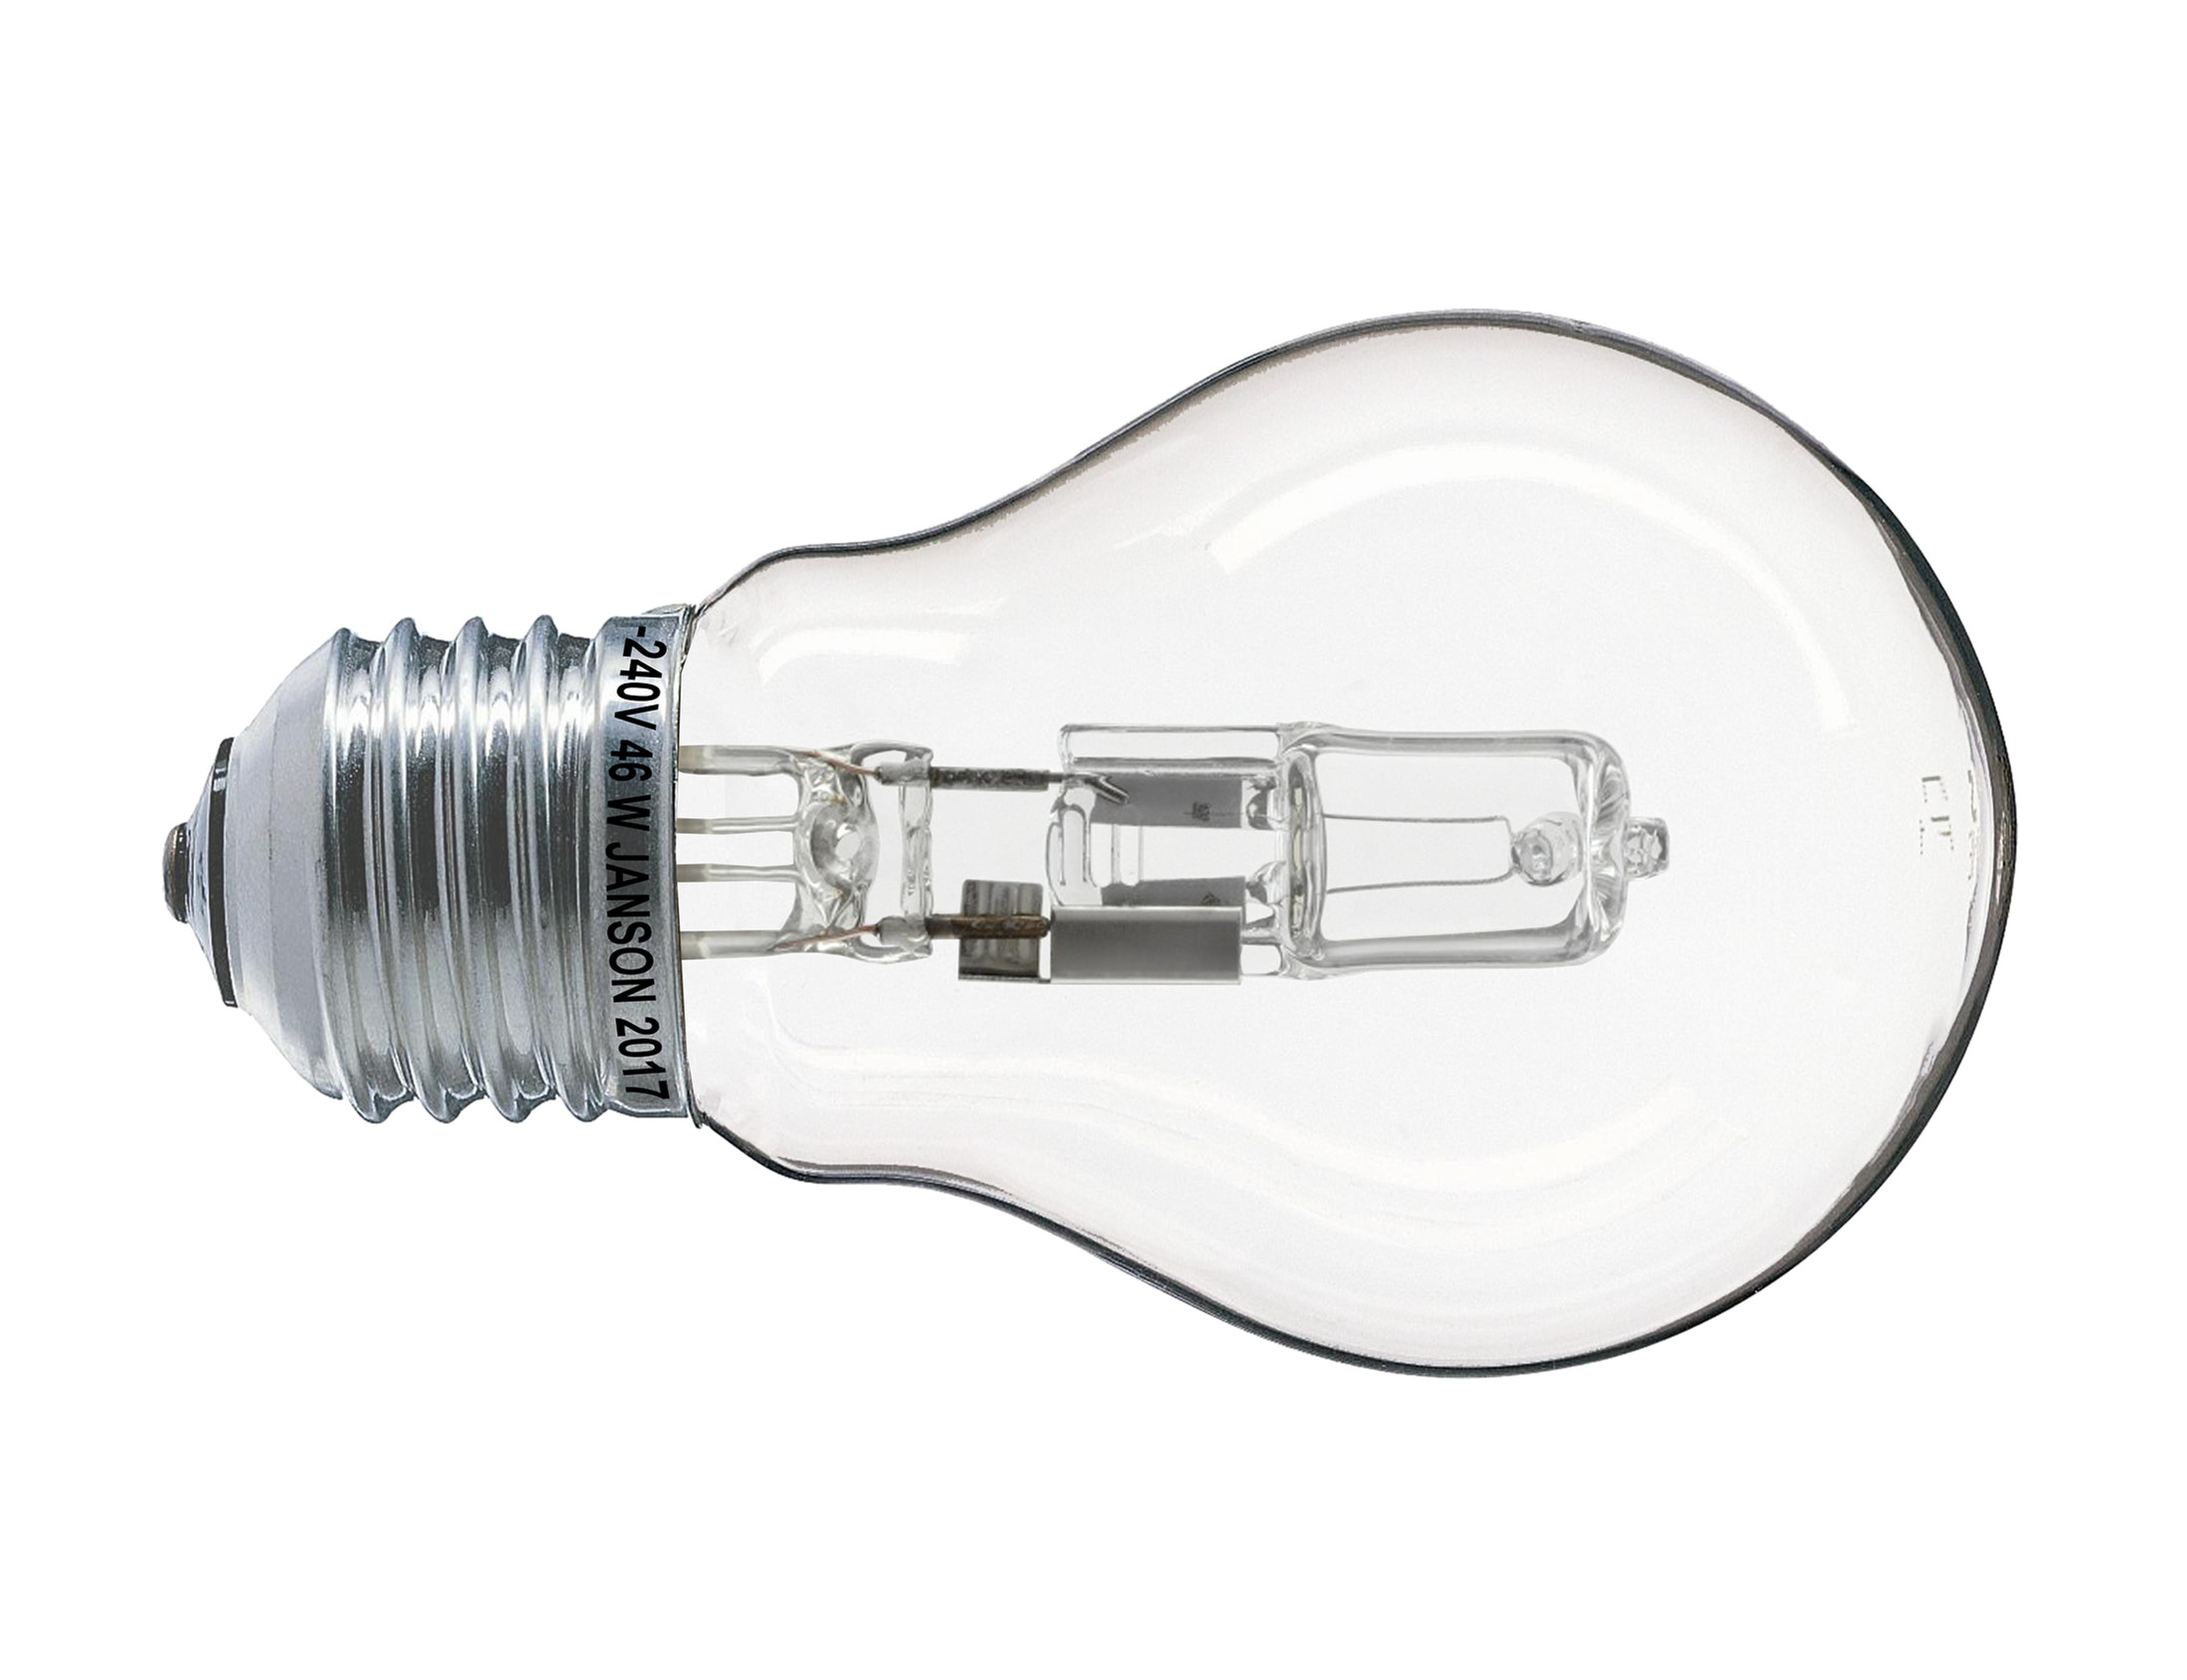 Leuchtstoffröhren-Verbot beschleunigt den Umstieg auf LED – Energie-Experten